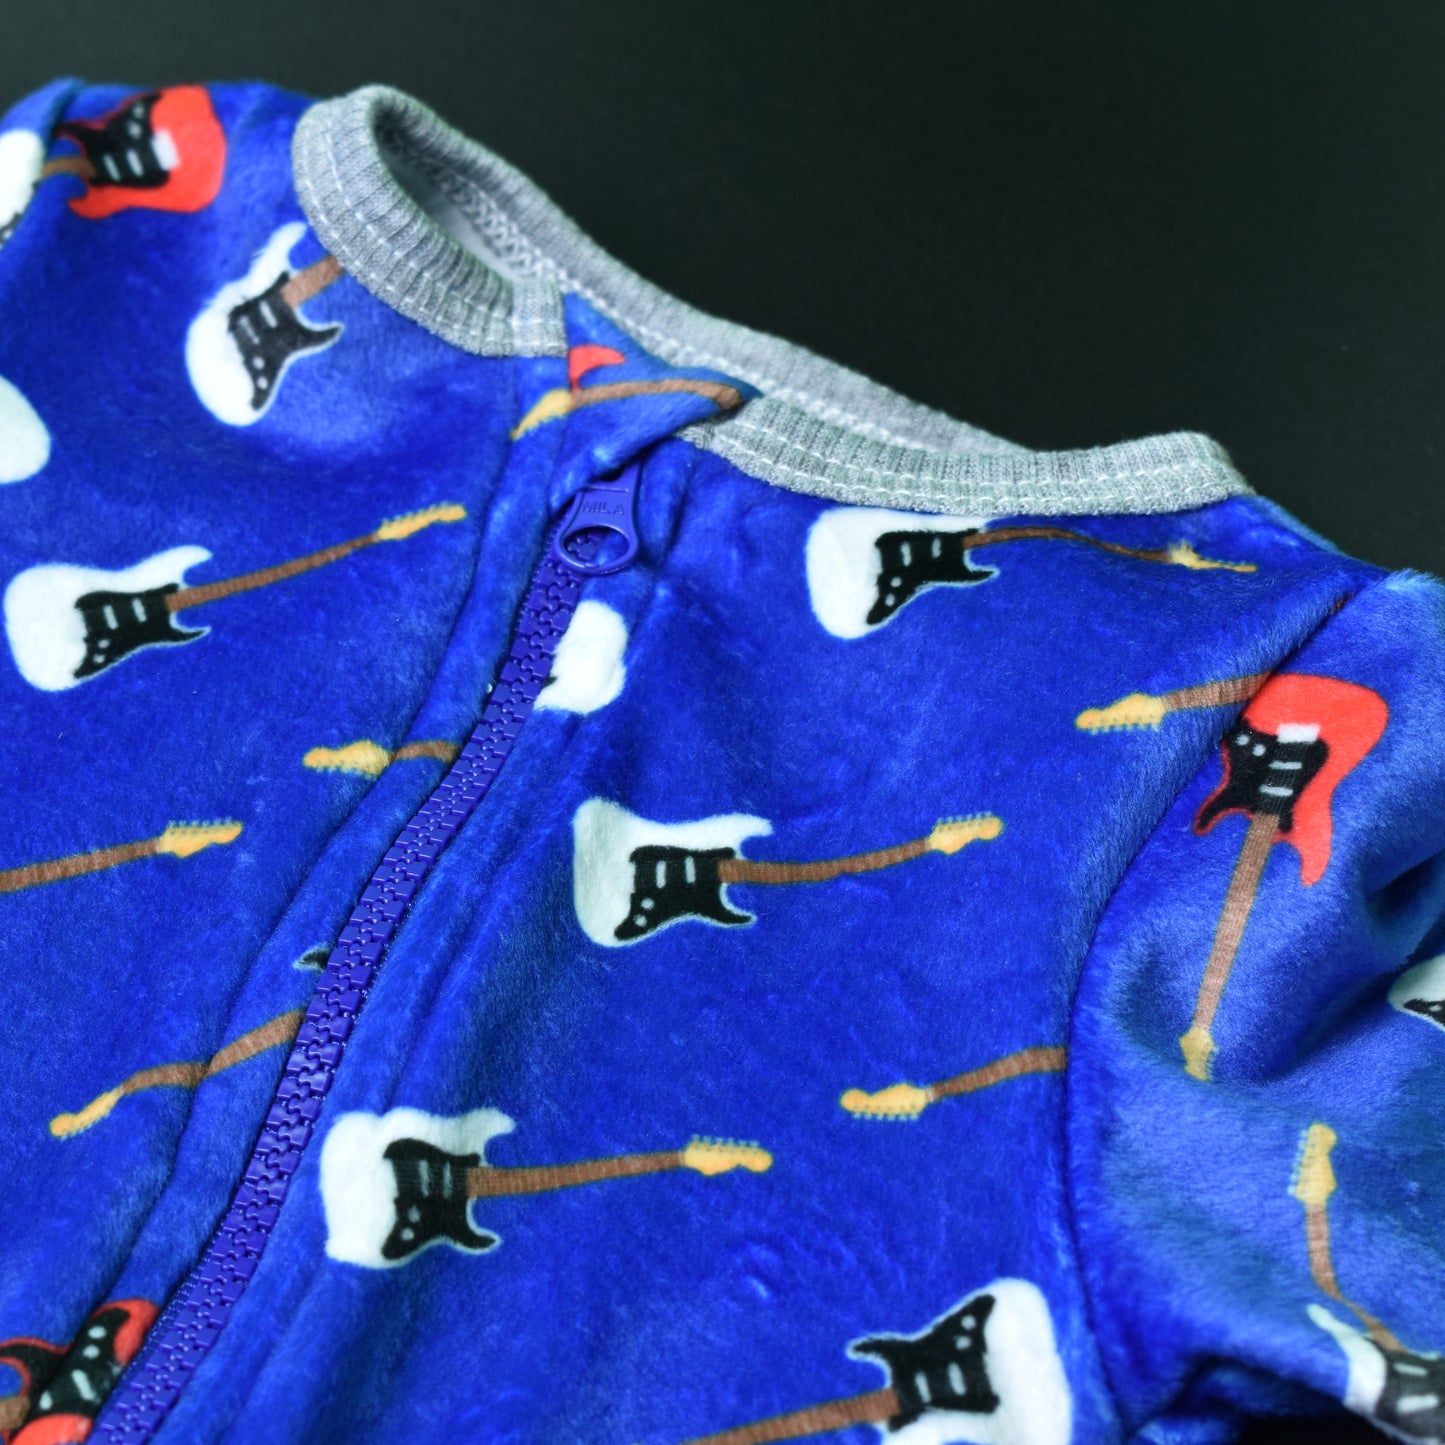 Baby One-Piece Pajama